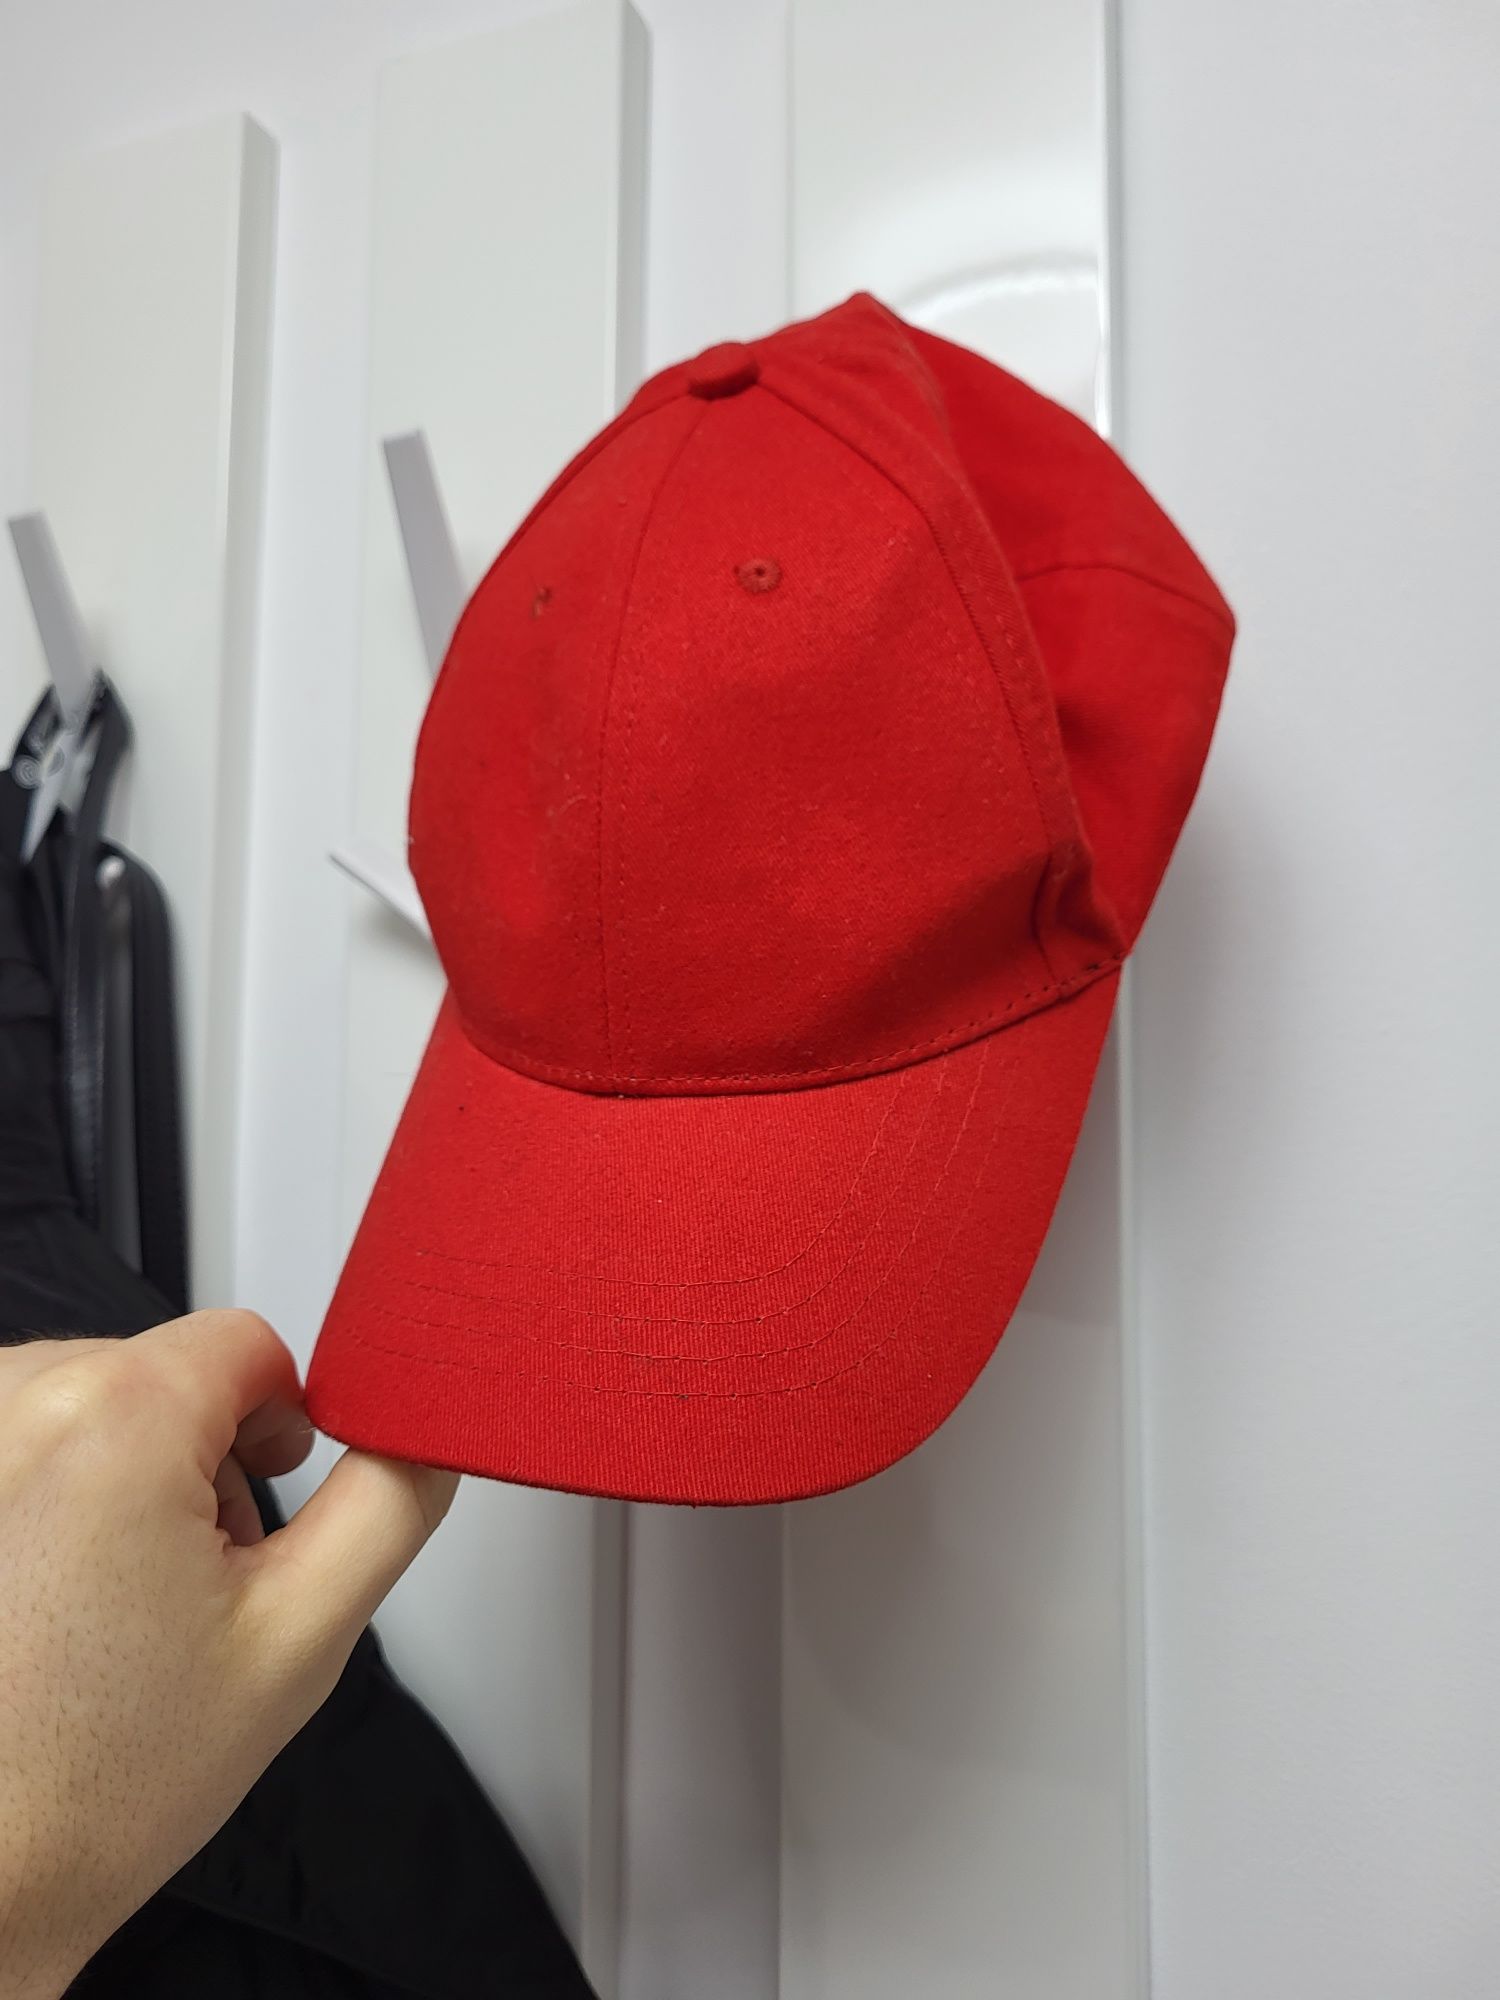 Șapcă roșie unisex 

De preferat predare personala sau trimit în tara